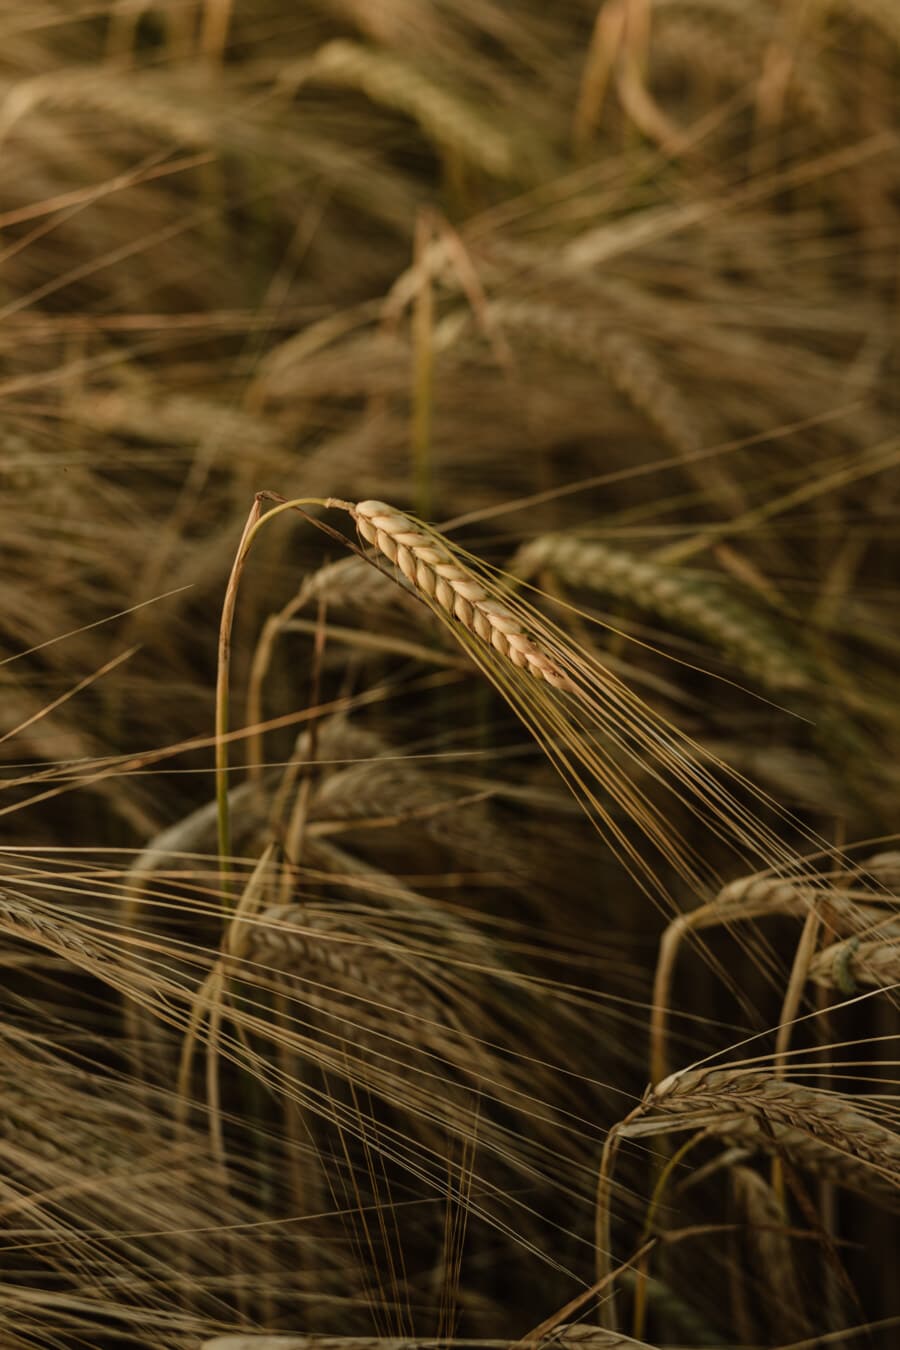 campo de trigo, trigo, cereais, grão, campo, palha, agricultura, sementes, rural, seca